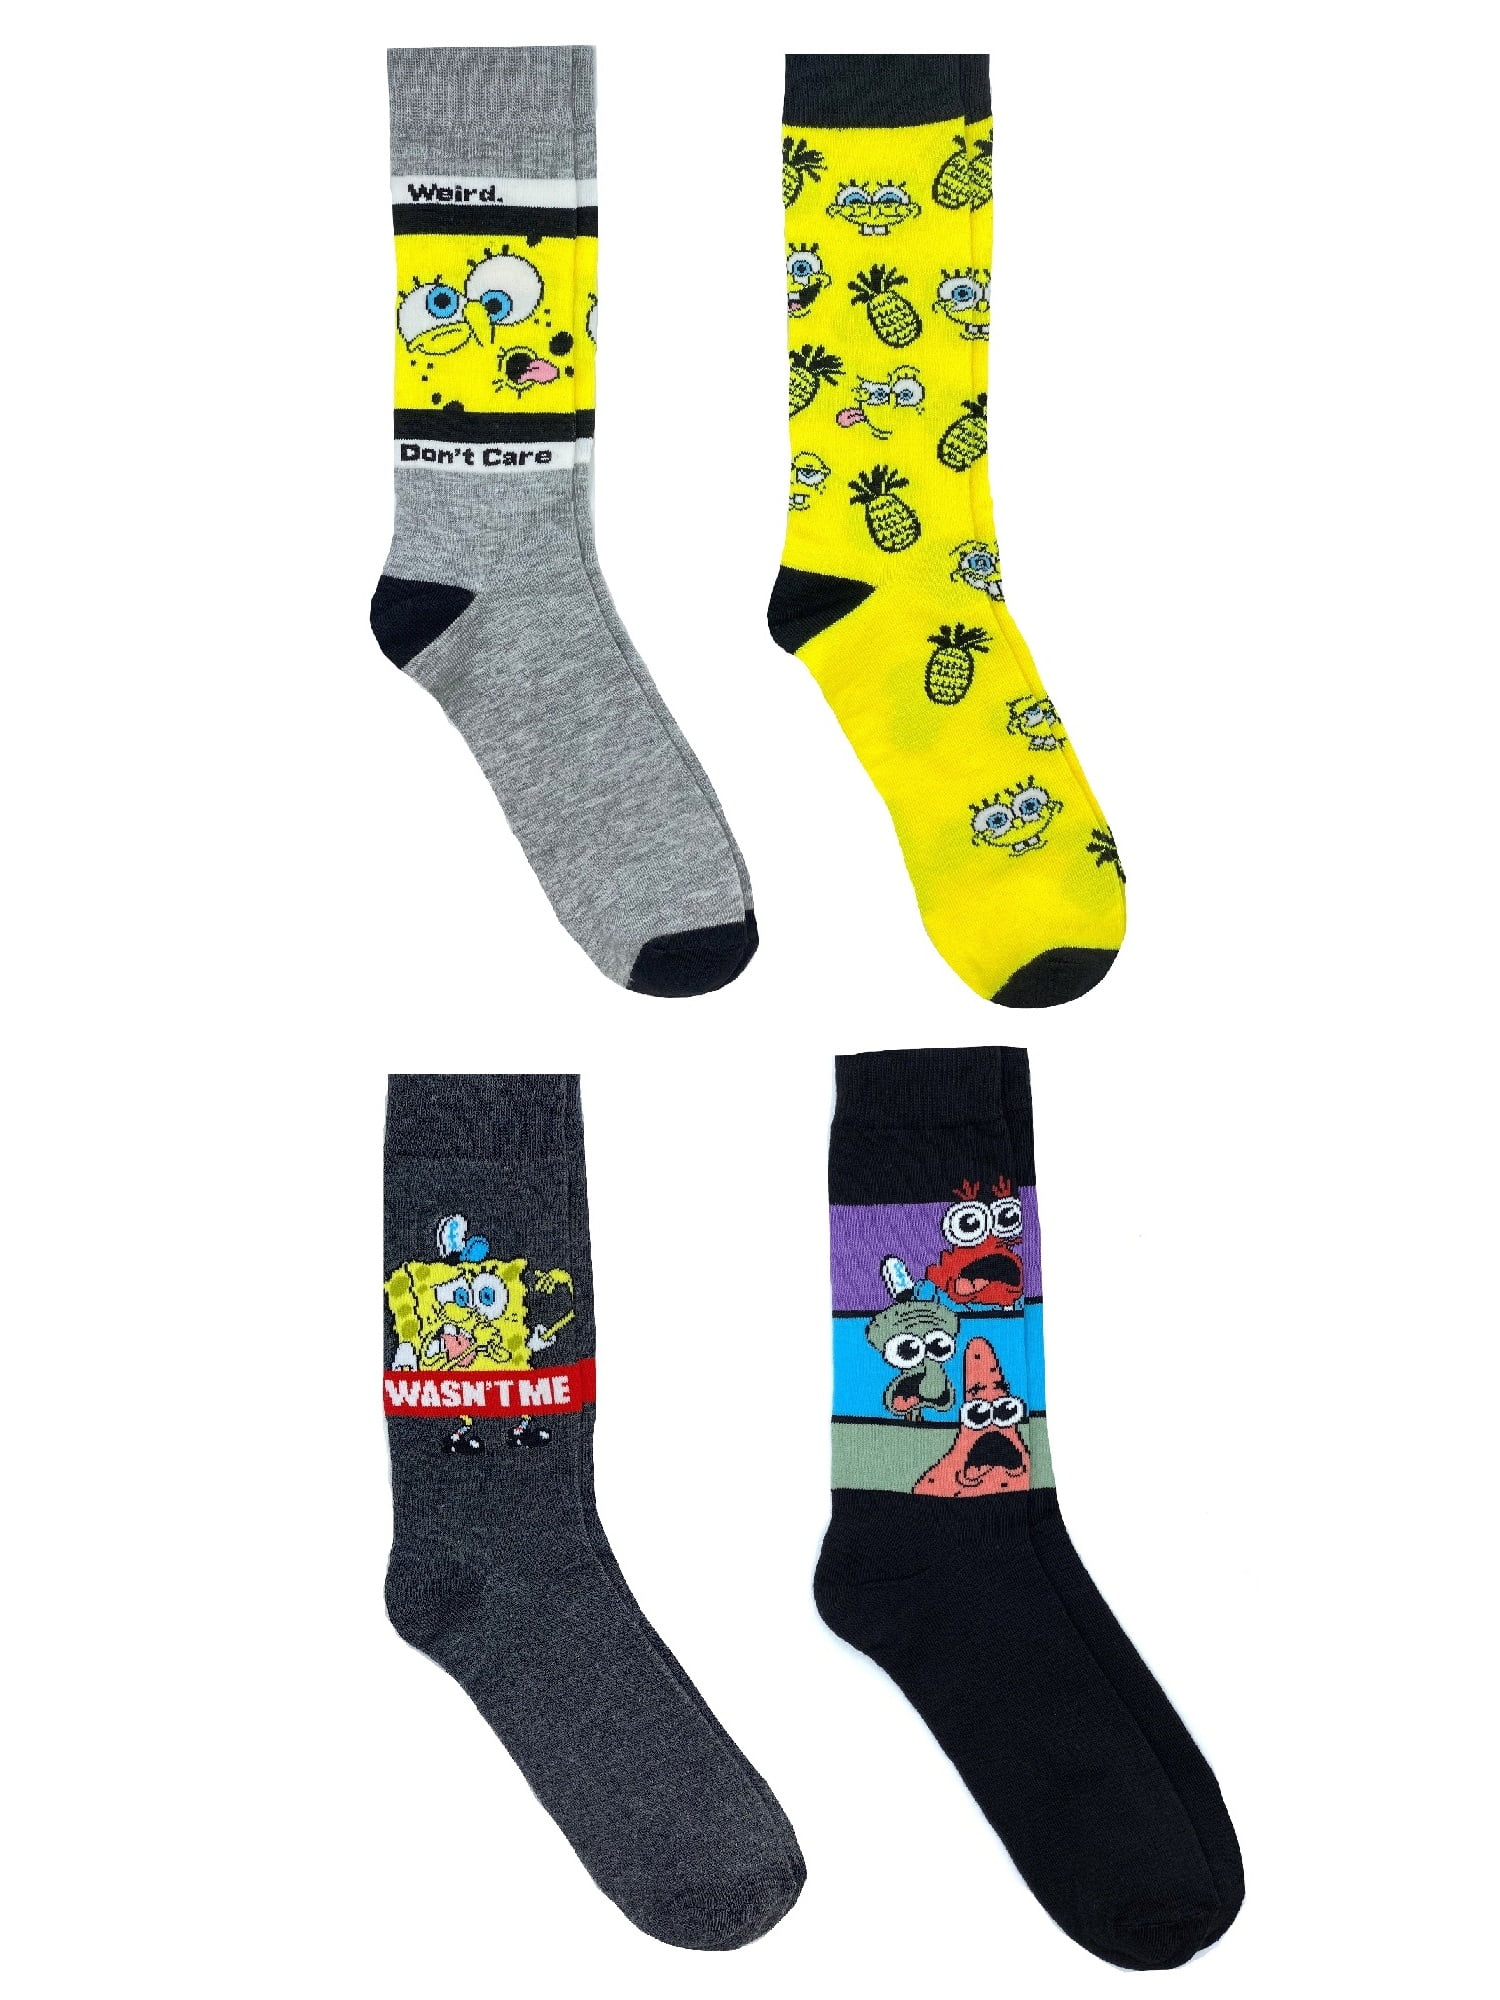 Spongebob SquarePants Men’s Socks Scared Bob